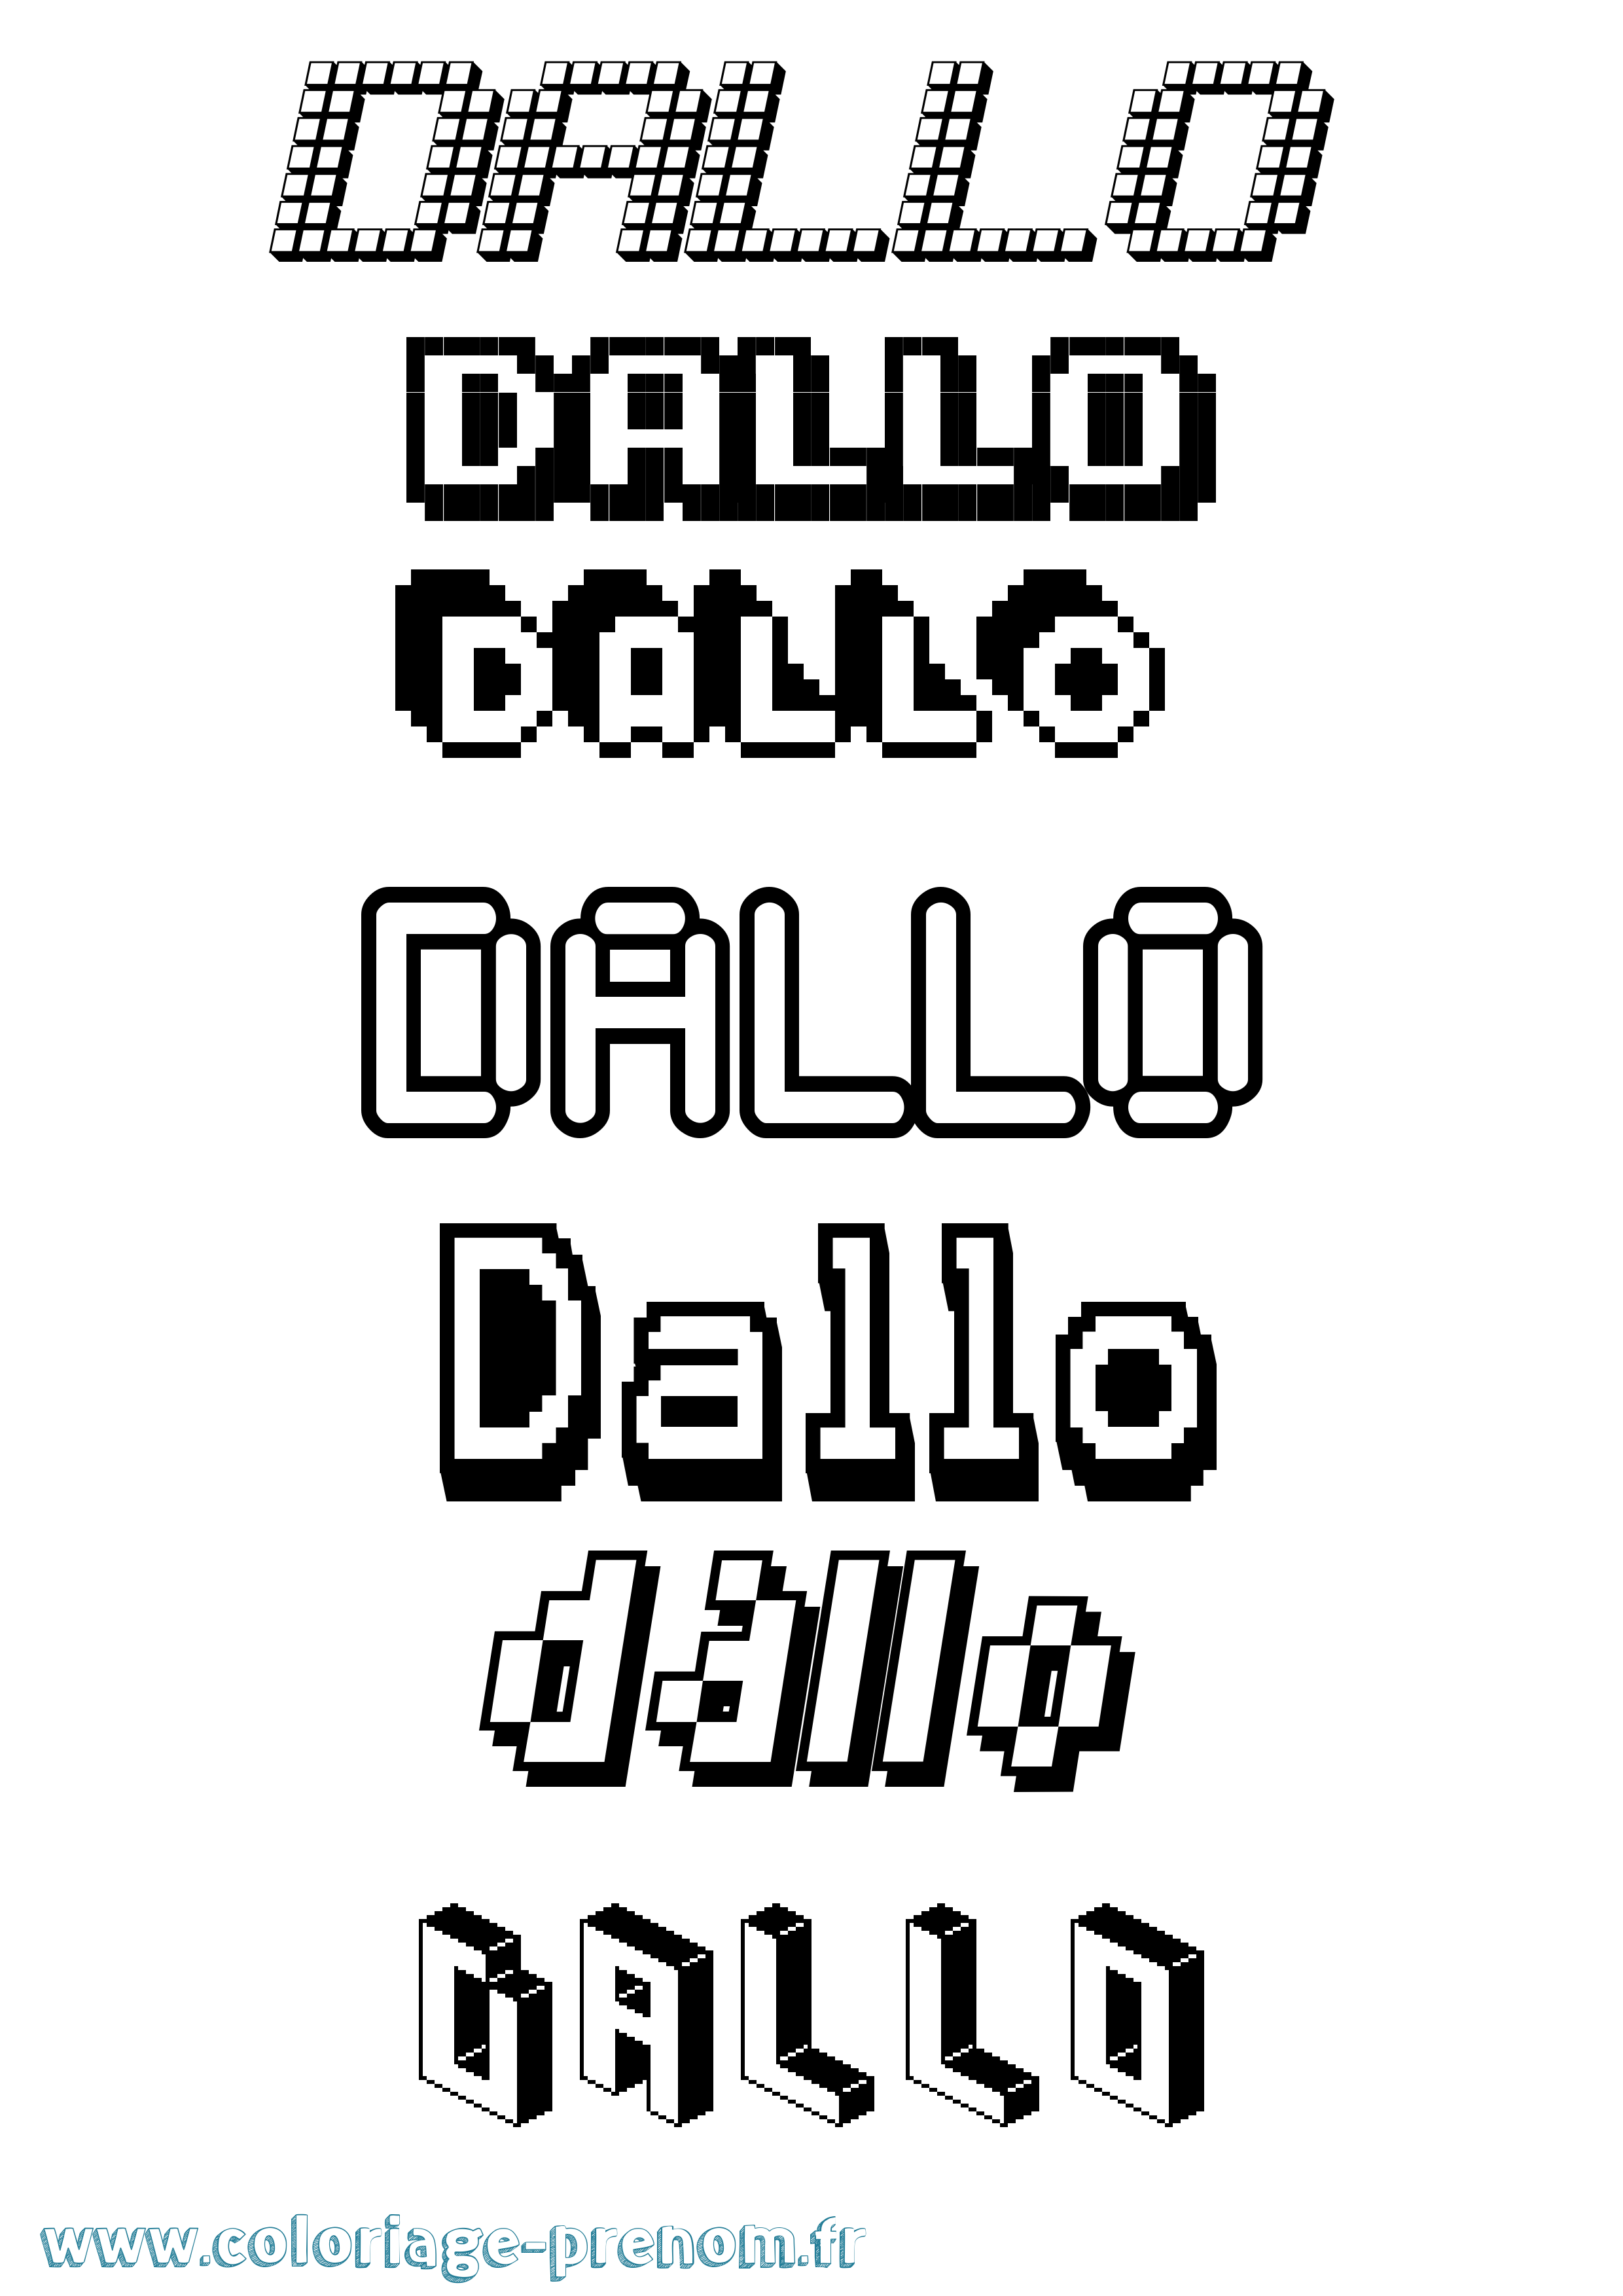 Coloriage prénom Dallo Pixel